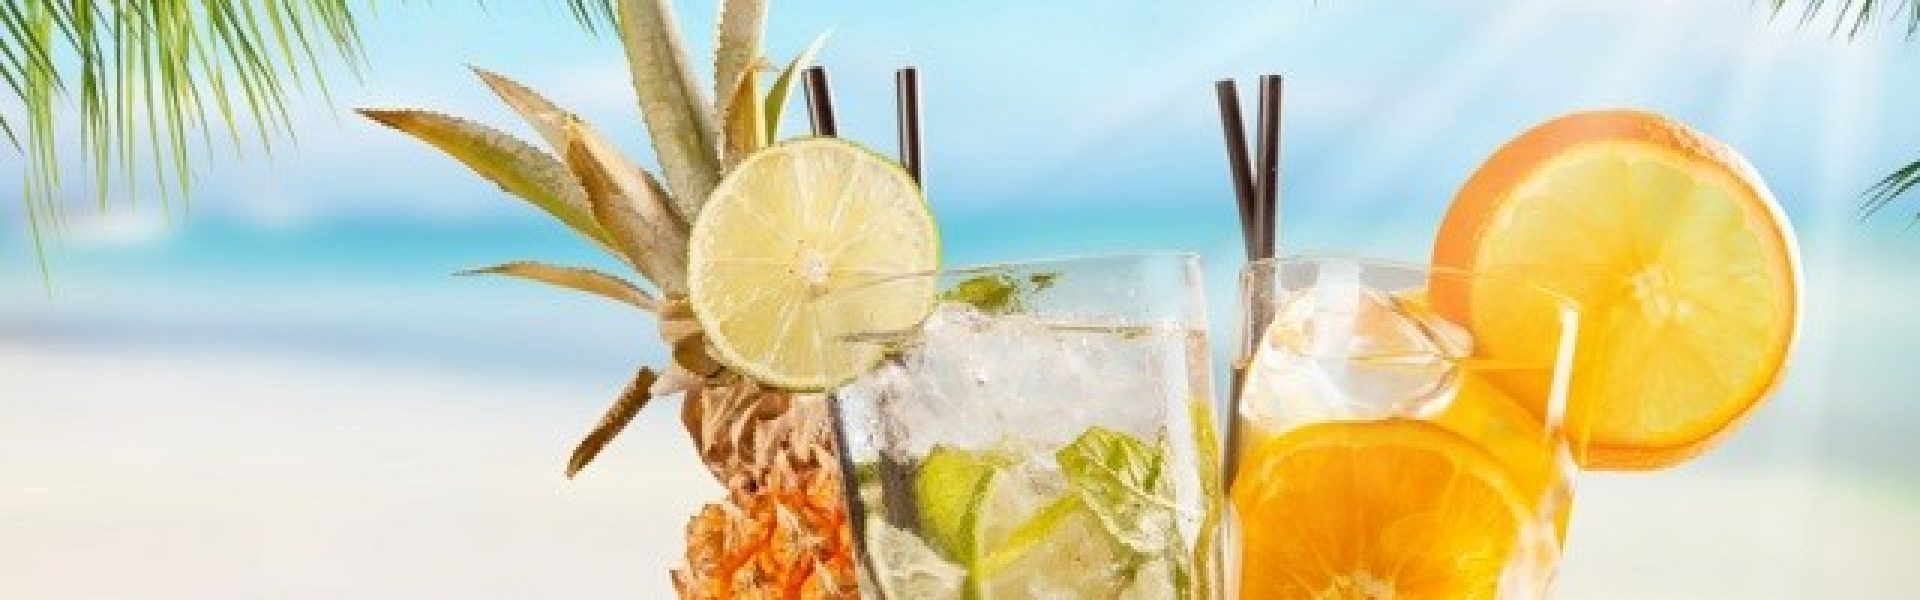 Cocktail-unter-Palmen-am-Sandstrand In diesem erfrischenden Bild ist ein köstlicher Cocktail auf einem Tisch unter schattenspendenden Palmen am Sandstrand zu sehen. Die glitzernde Sonne spiegelt sich im türkisfarbenen Wasser wider, während sanfte Wellen an den Strand rollen. Die exotische Atmosphäre lädt zum Entspannen und Genießen ein. Der Cocktail ist kunstvoll mit frischen Früchten und einem farbenfrohen Schirmchen garniert und verspricht einen Moment der Erfrischung und des puren Genusses. Dieses Bild erweckt das Verlangen nach einem tropischen Urlaub und erinnert uns daran, wie wunderbar es ist, sich an einem paradiesischen Ort zu entspannen.